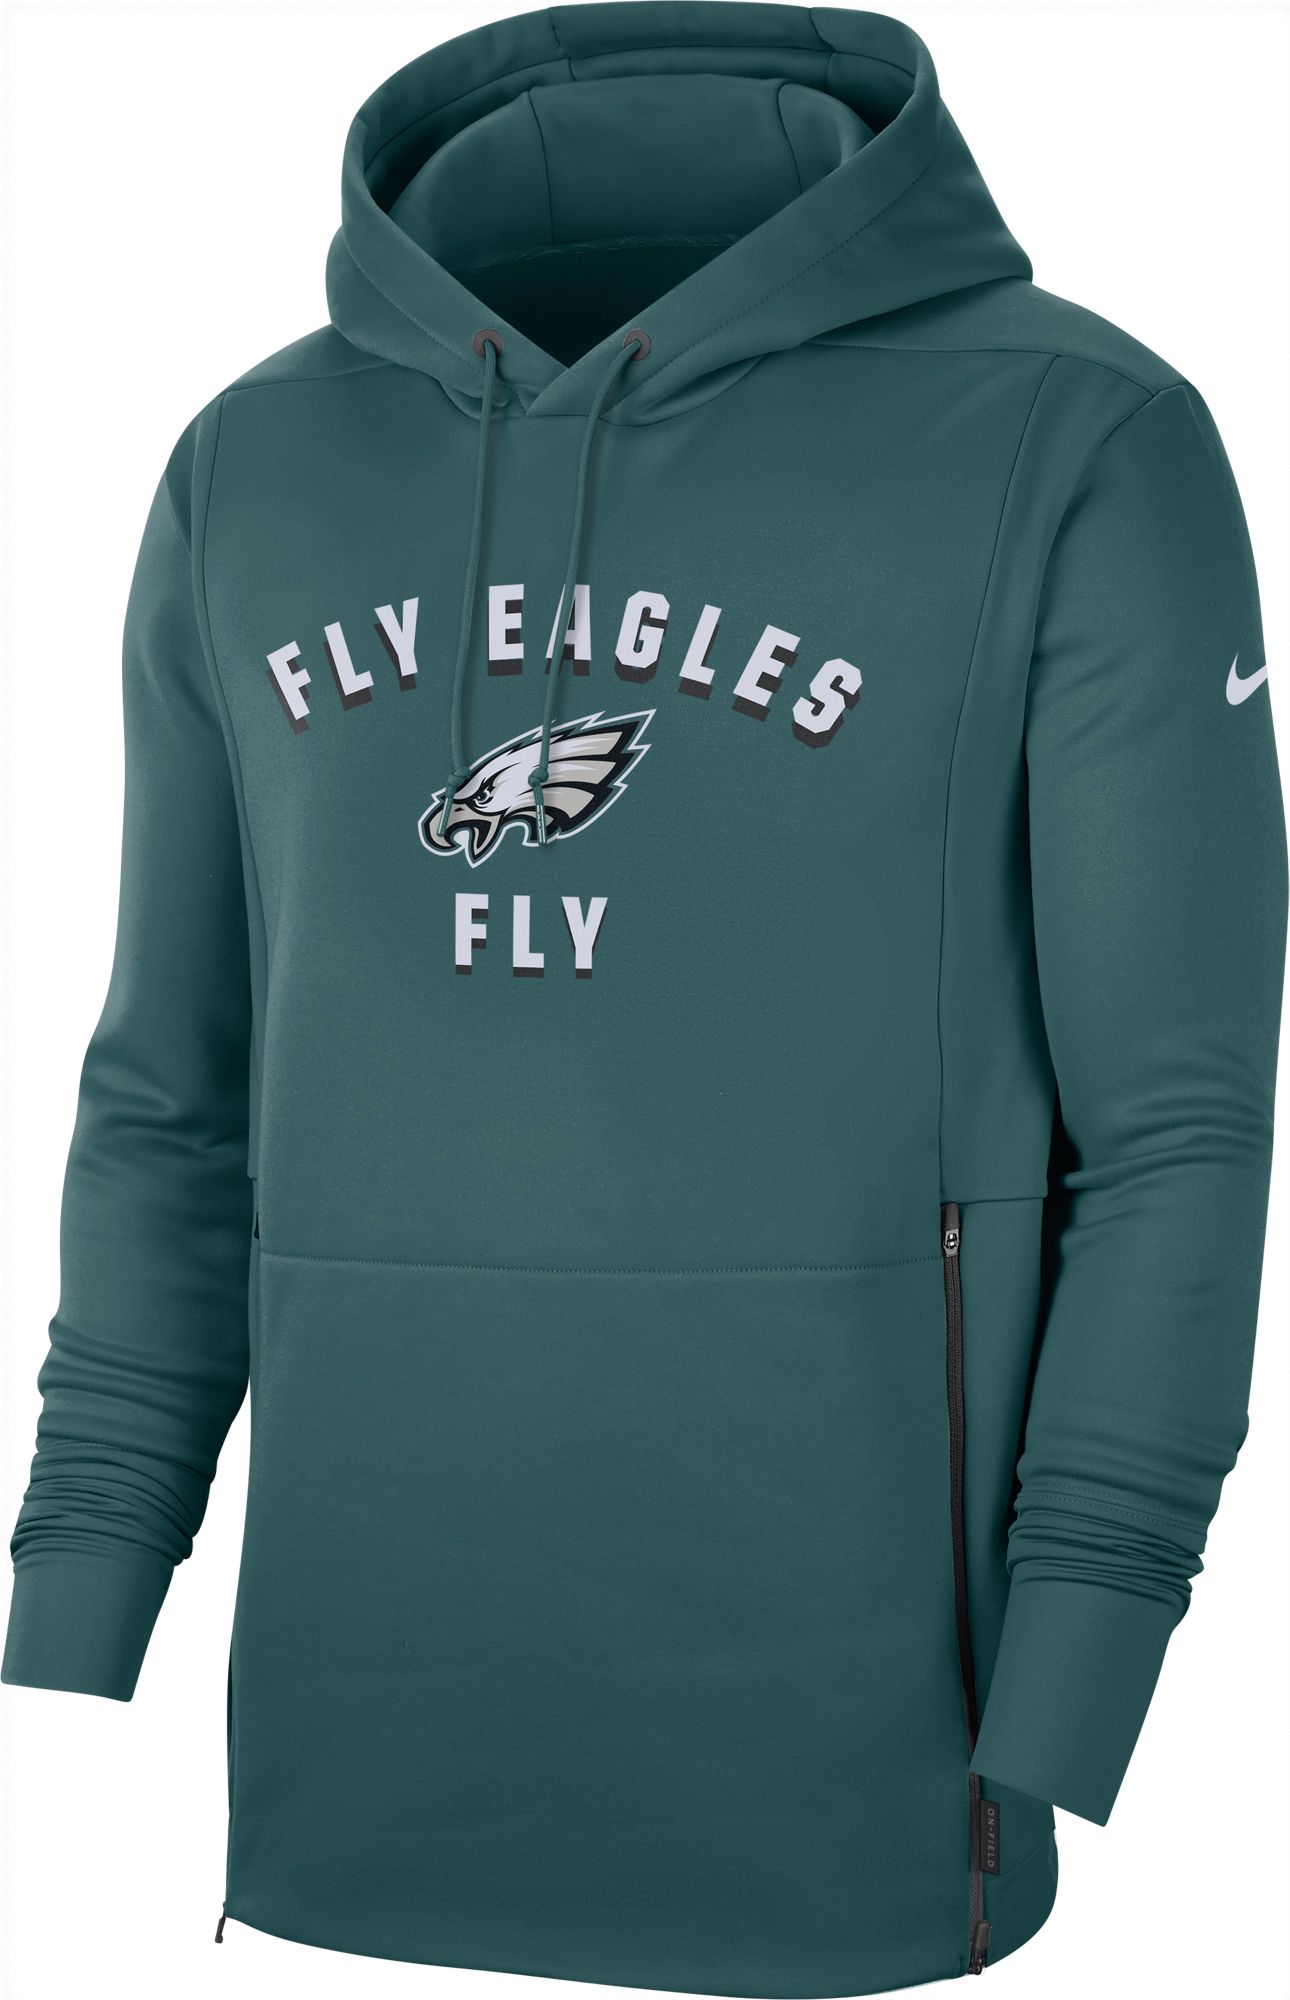 eagles sideline hoodie